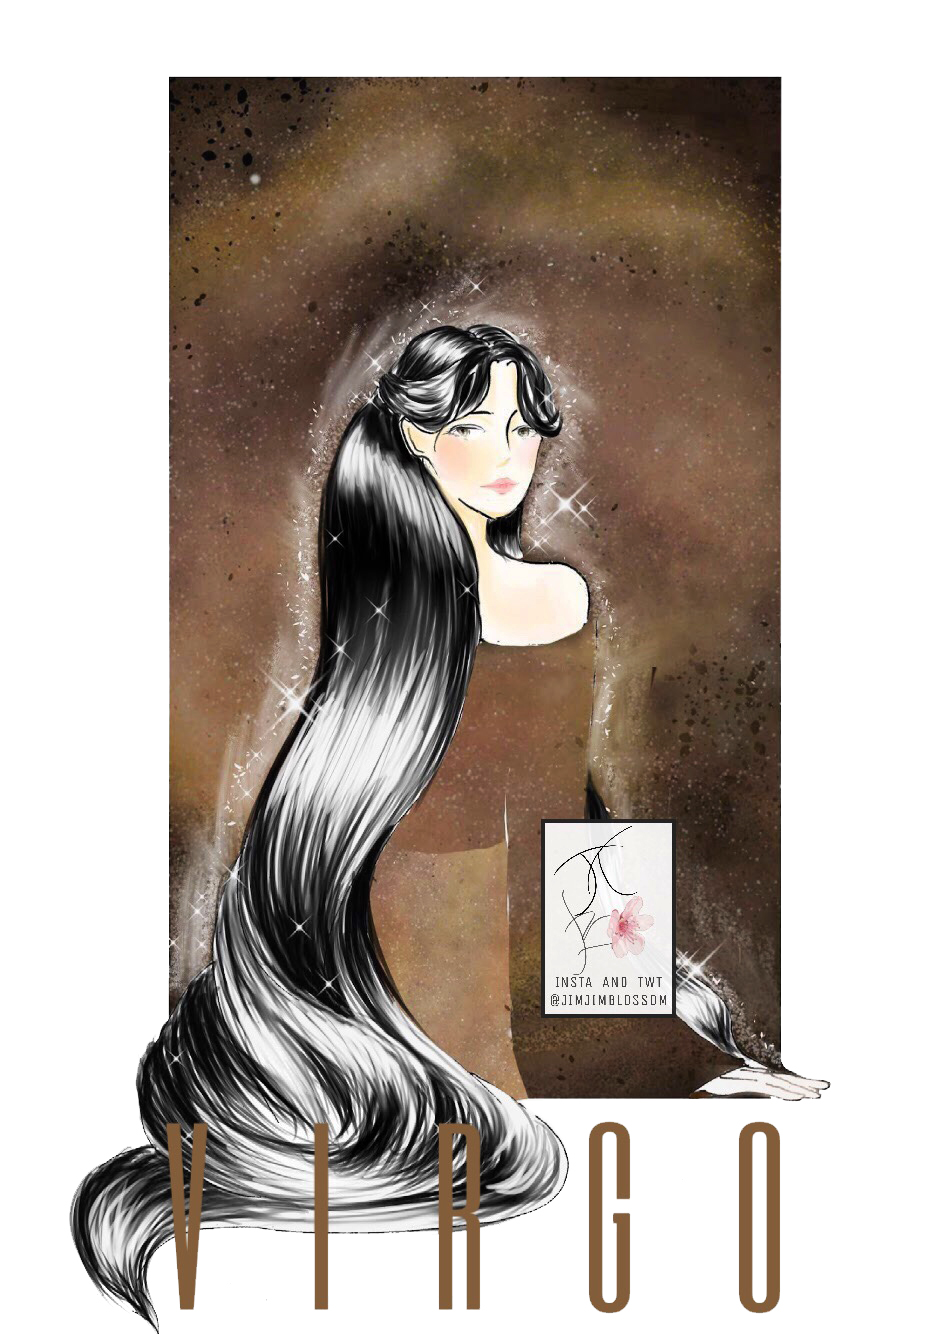 Cung hoàng đạo Xử Nữ với biểu tượng cô gái có mái tóc đen dài